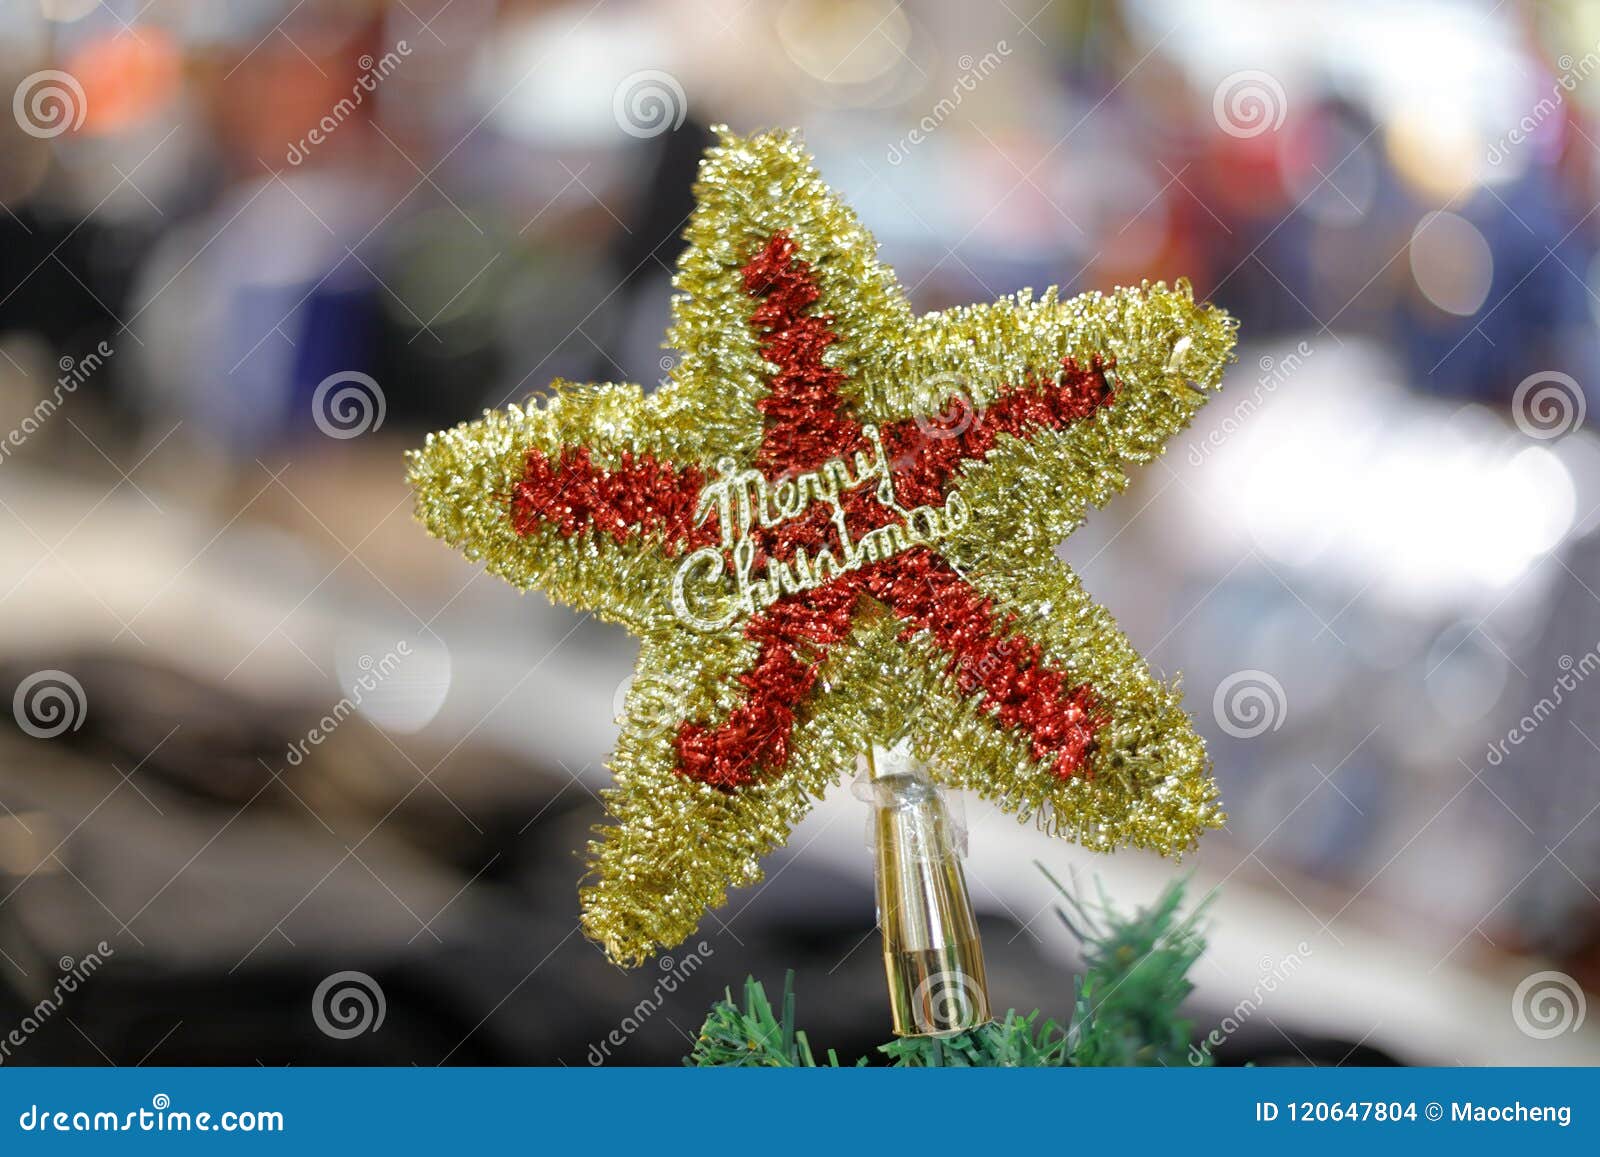 Stella Di Natale A 5 Punte.Pentagramma Rosso Di Natale Adobe Rgb Fotografia Stock Immagine Di Dicembre Vigilia 120647804